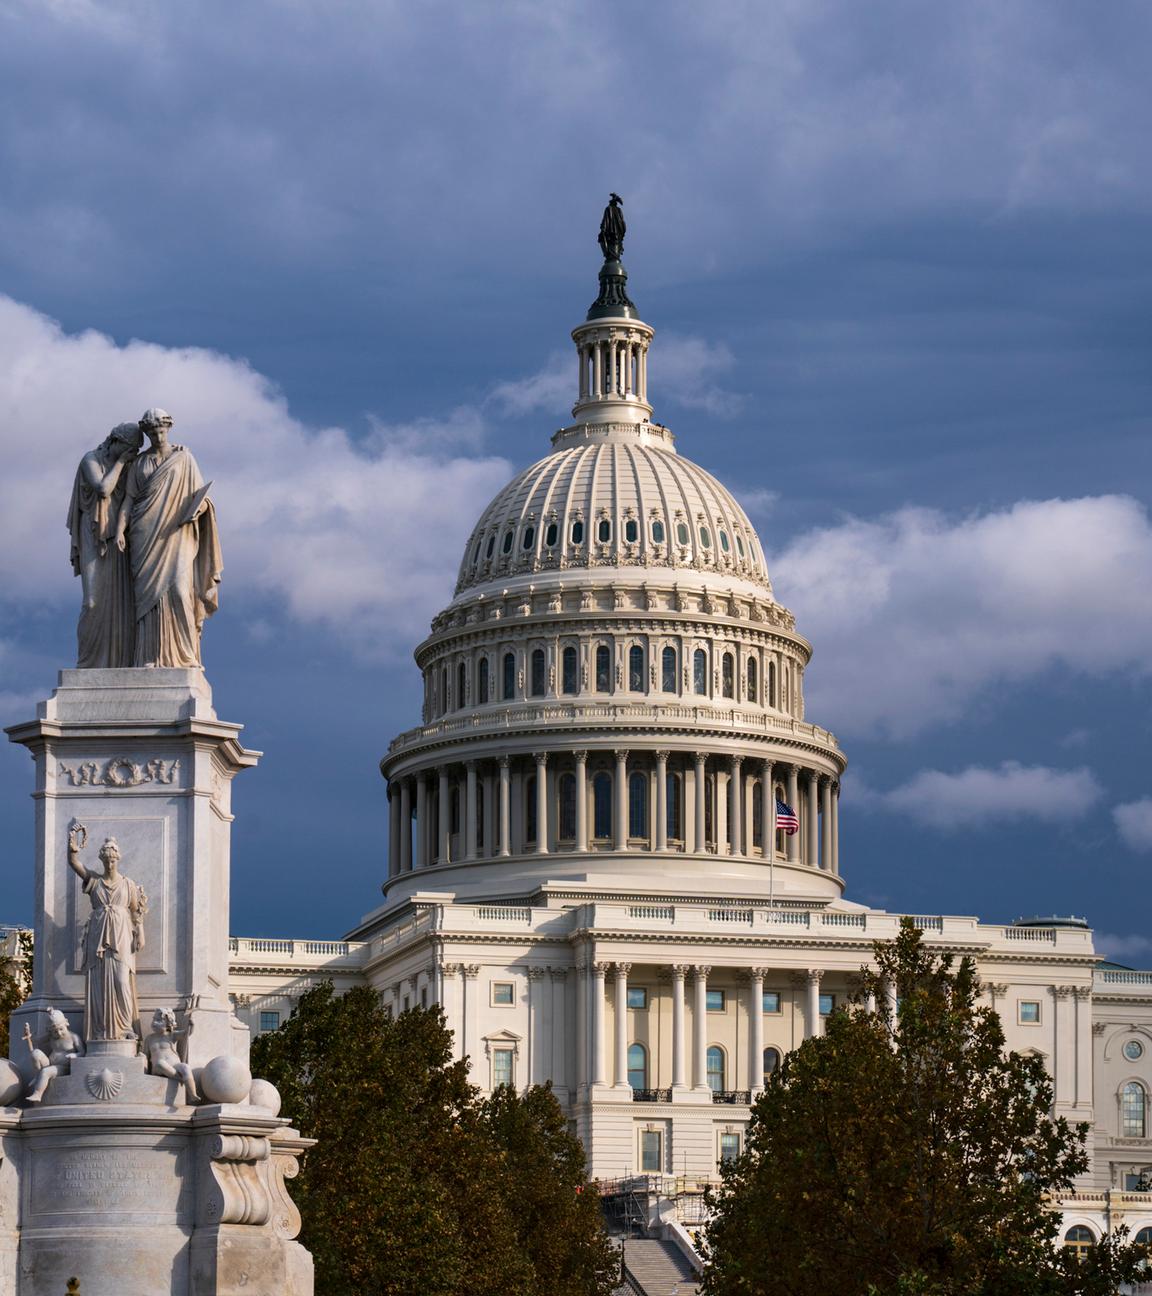 Archiv, 12.11.2019, Usa, Washington: Das Kapitol ist neben dem Friedensdenkmal zu sehen.